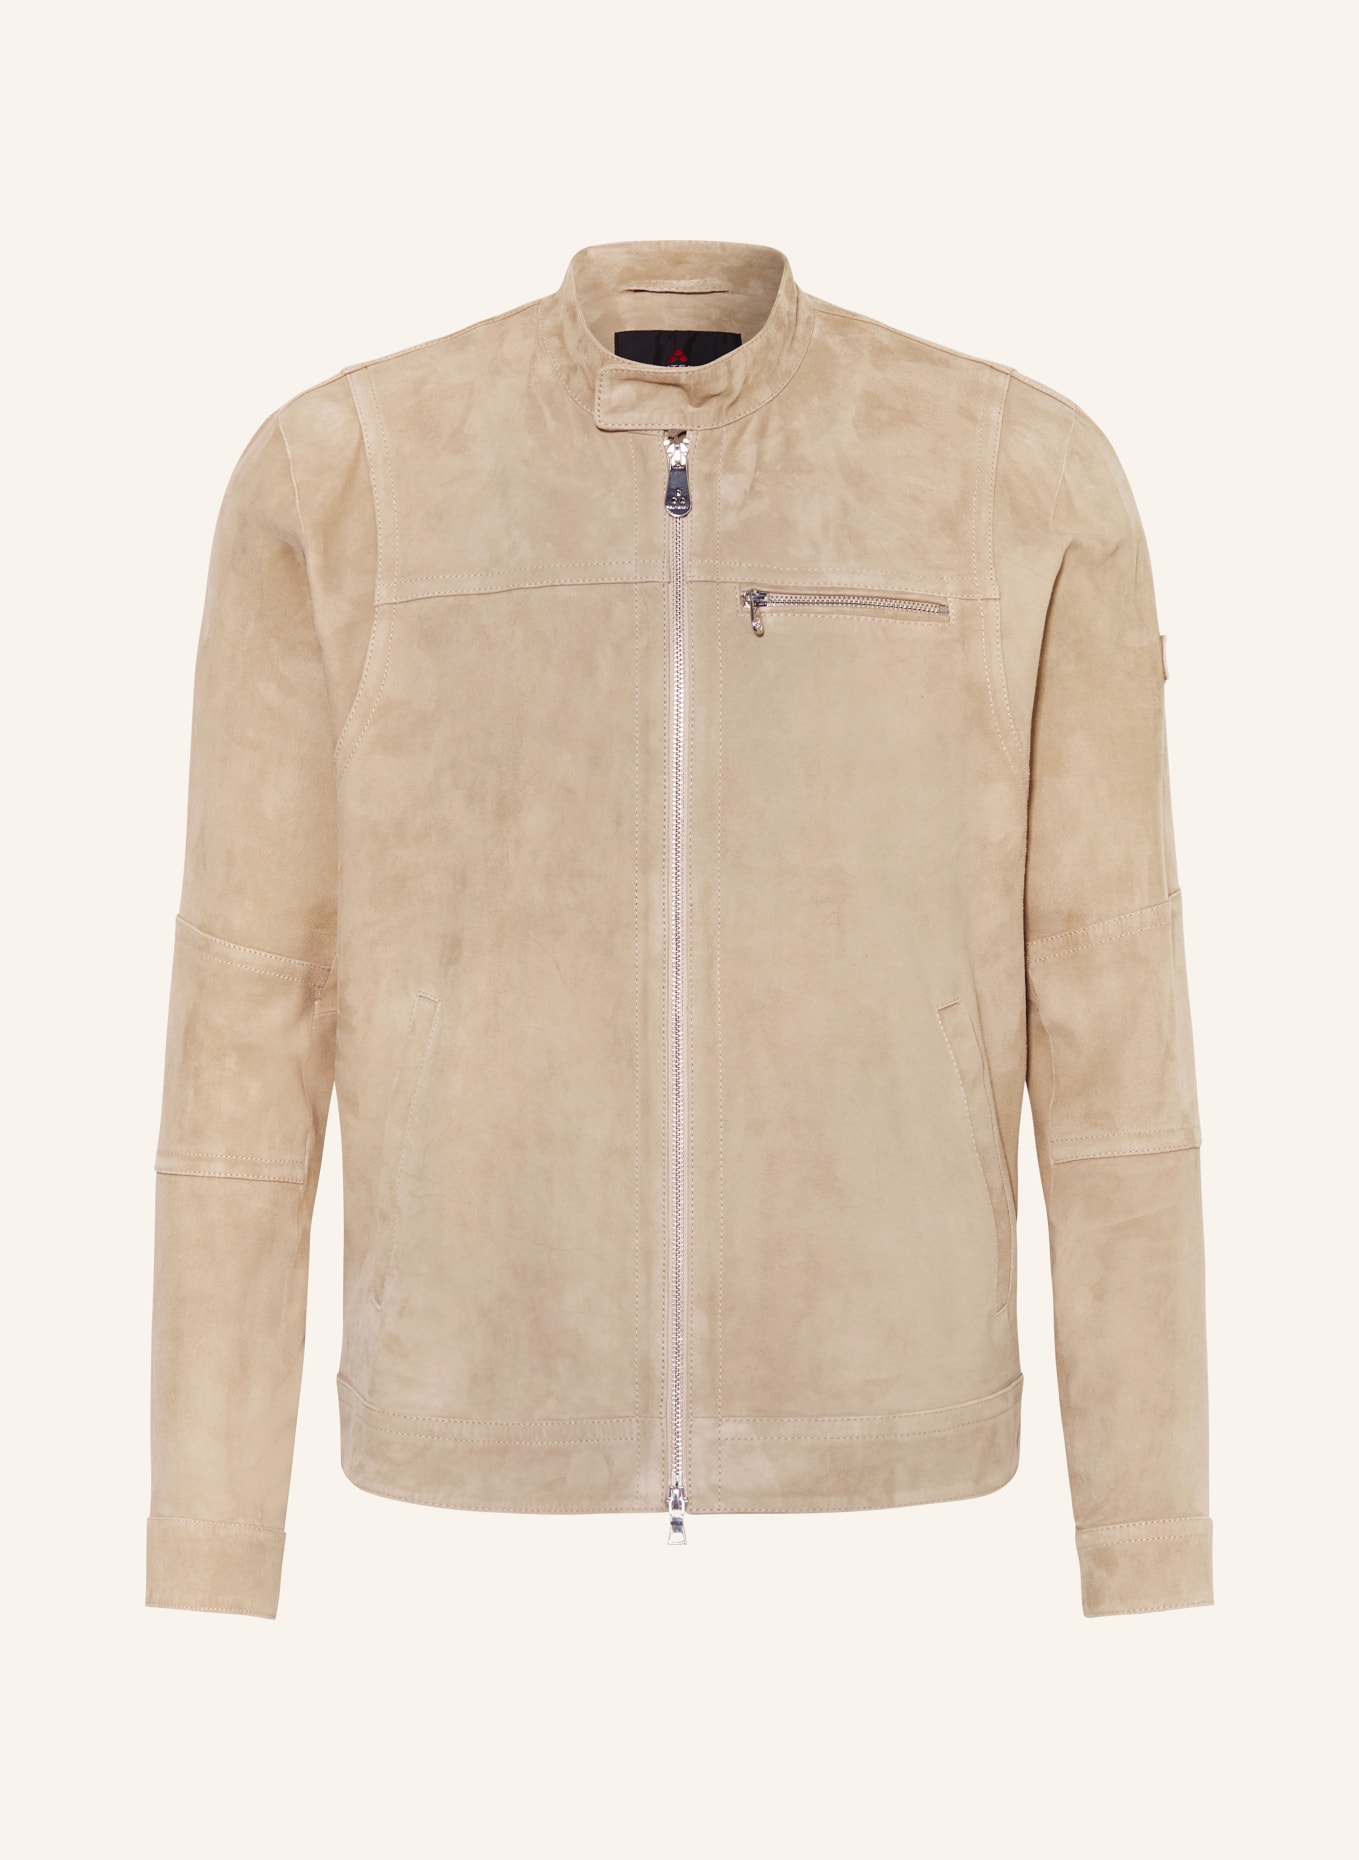 PEUTEREY Leather jacket SAGUARO in beige